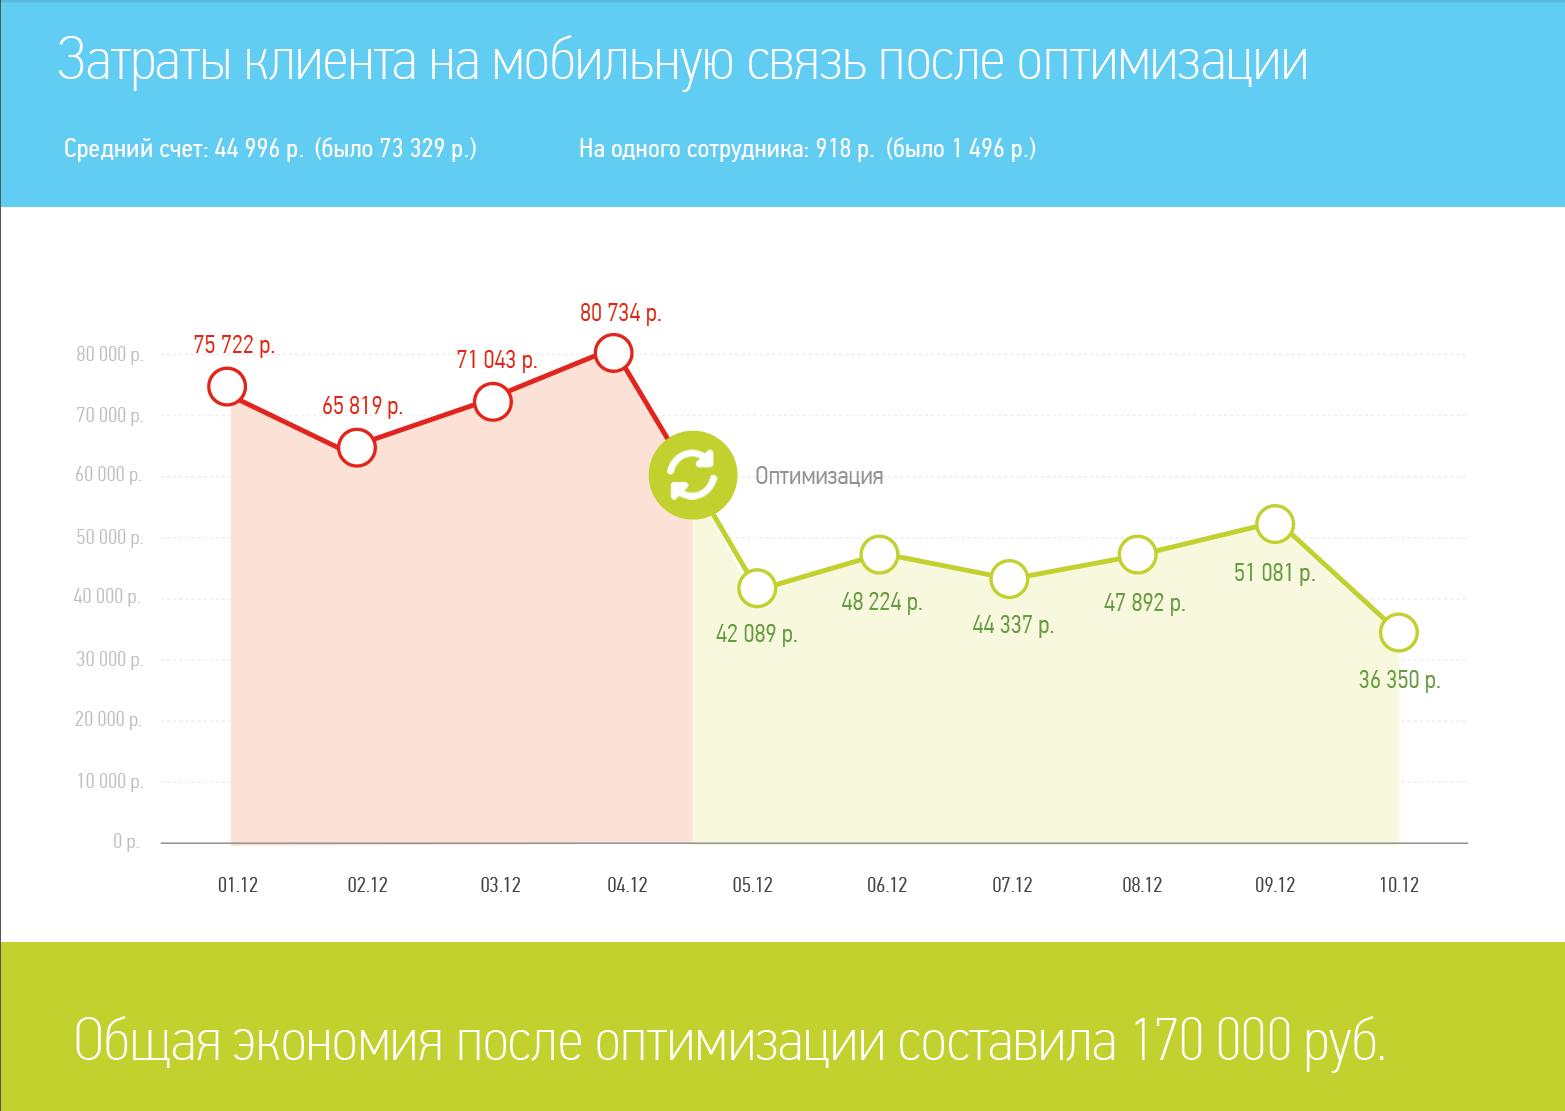 Экономия после оптимизации 170 000 руб.